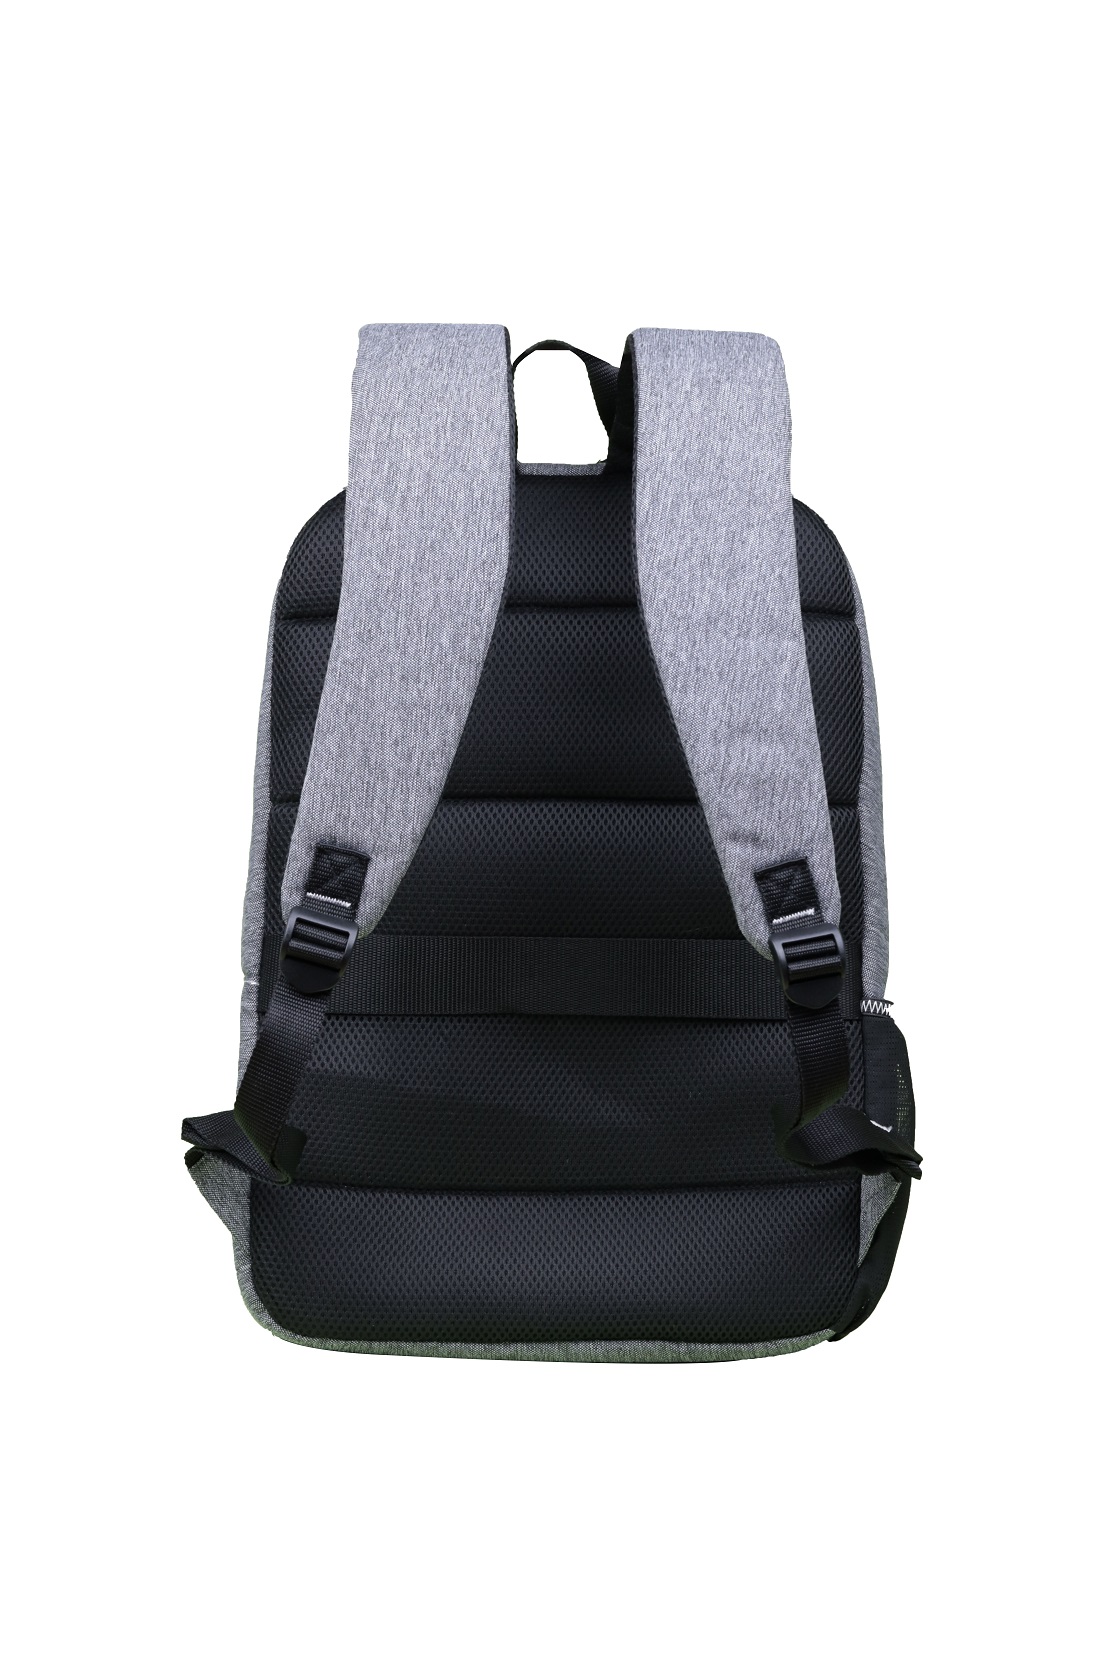 Obrázek Acer Vero OBP backpack 15.6", retail pack